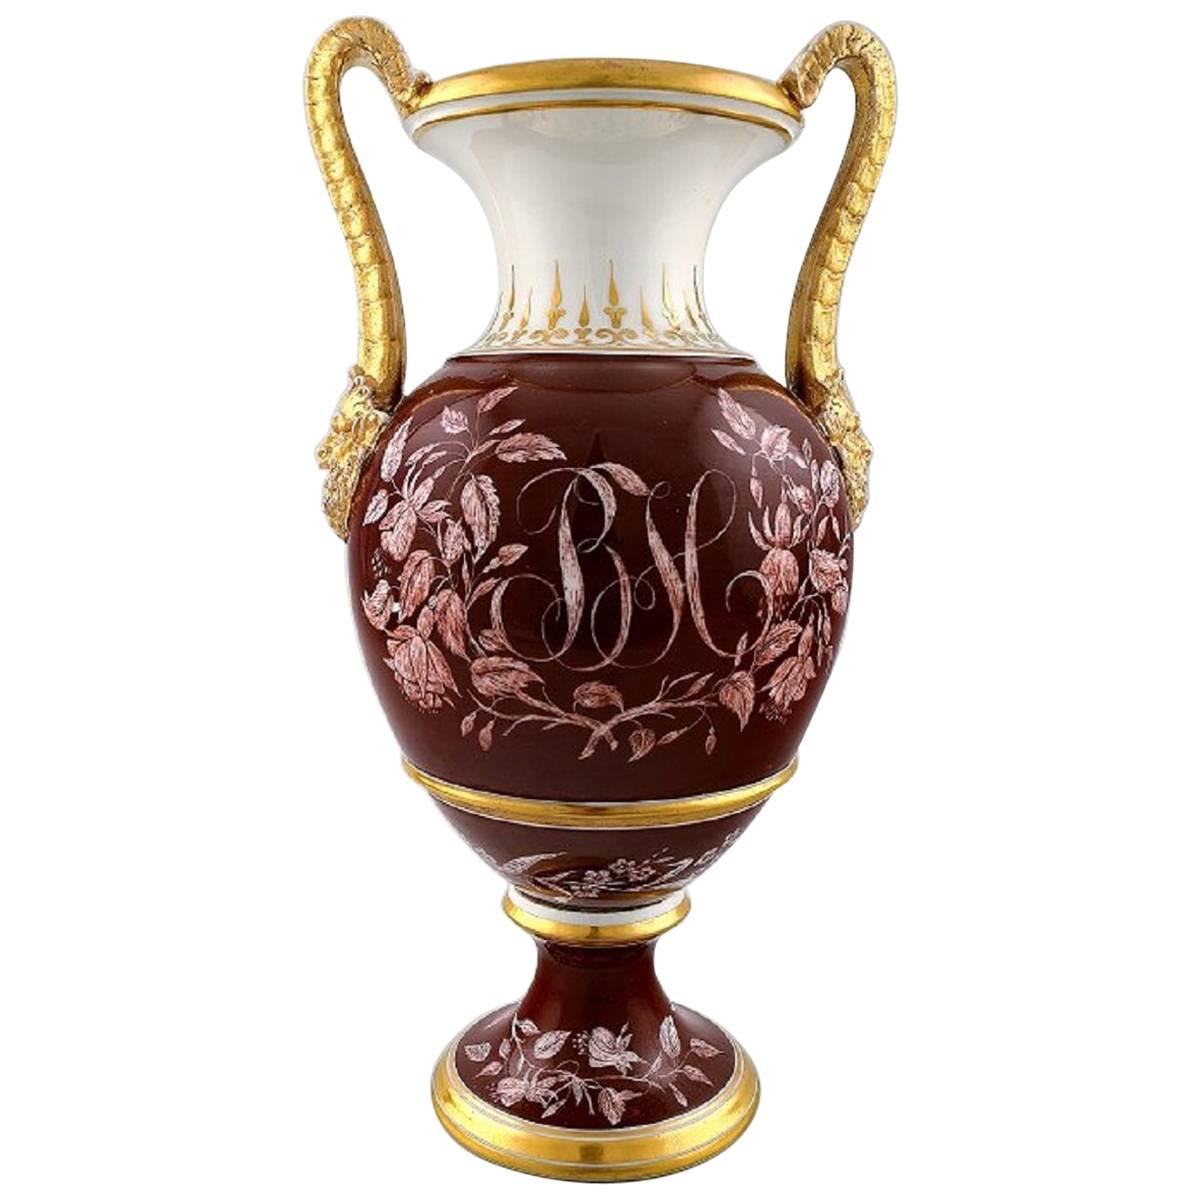 Nostalgie Große Mucha Keramik Trichter Vase Handbemalt zwei Damen Motive 